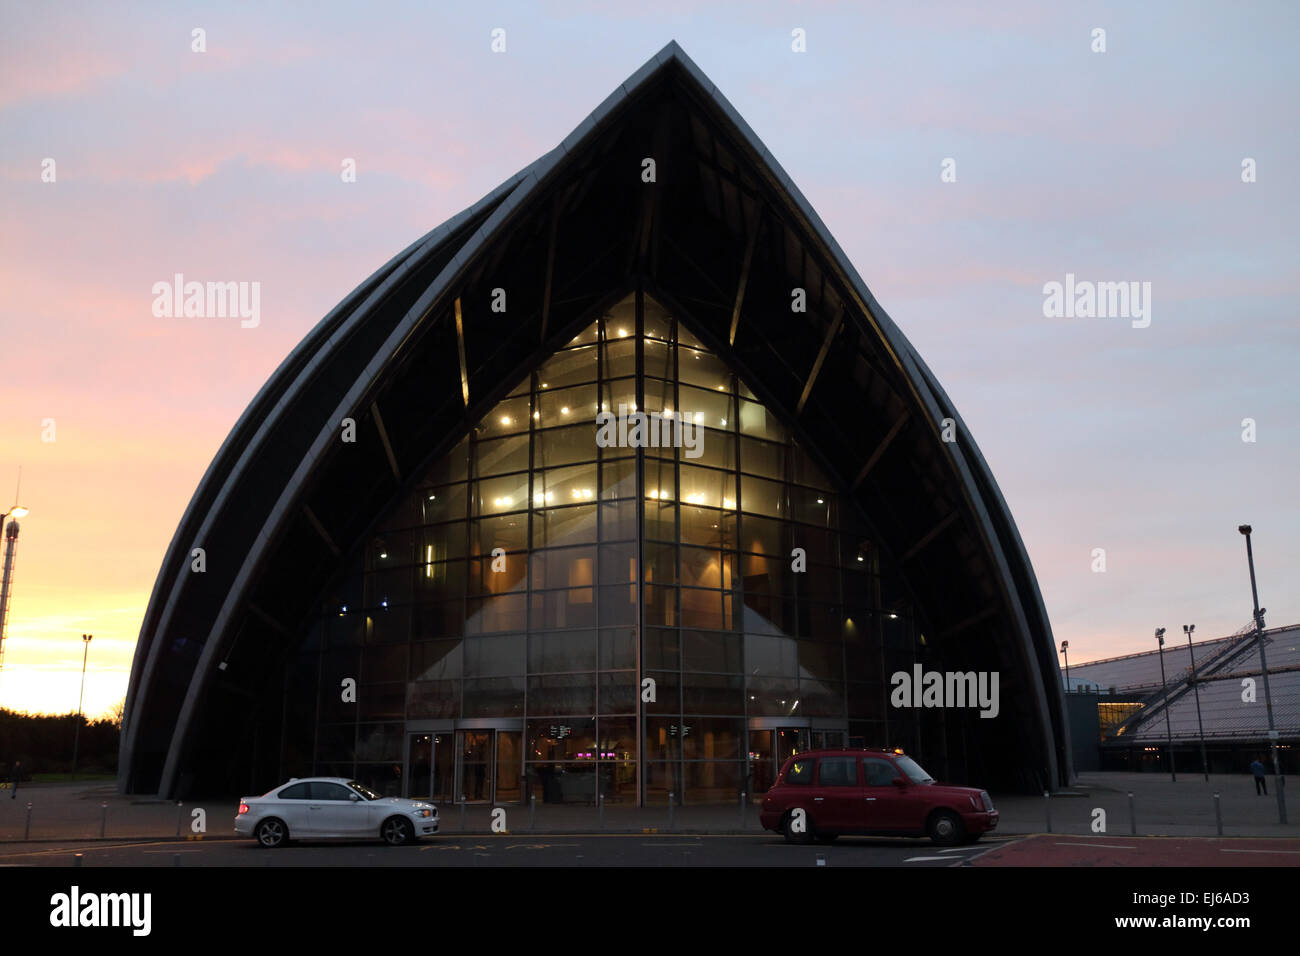 Clyde Auditorium Secc schottische Ausstellung und Konferenz Zentrum in der Abenddämmerung Glasgow Schottland, Vereinigtes Königreich Stockfoto